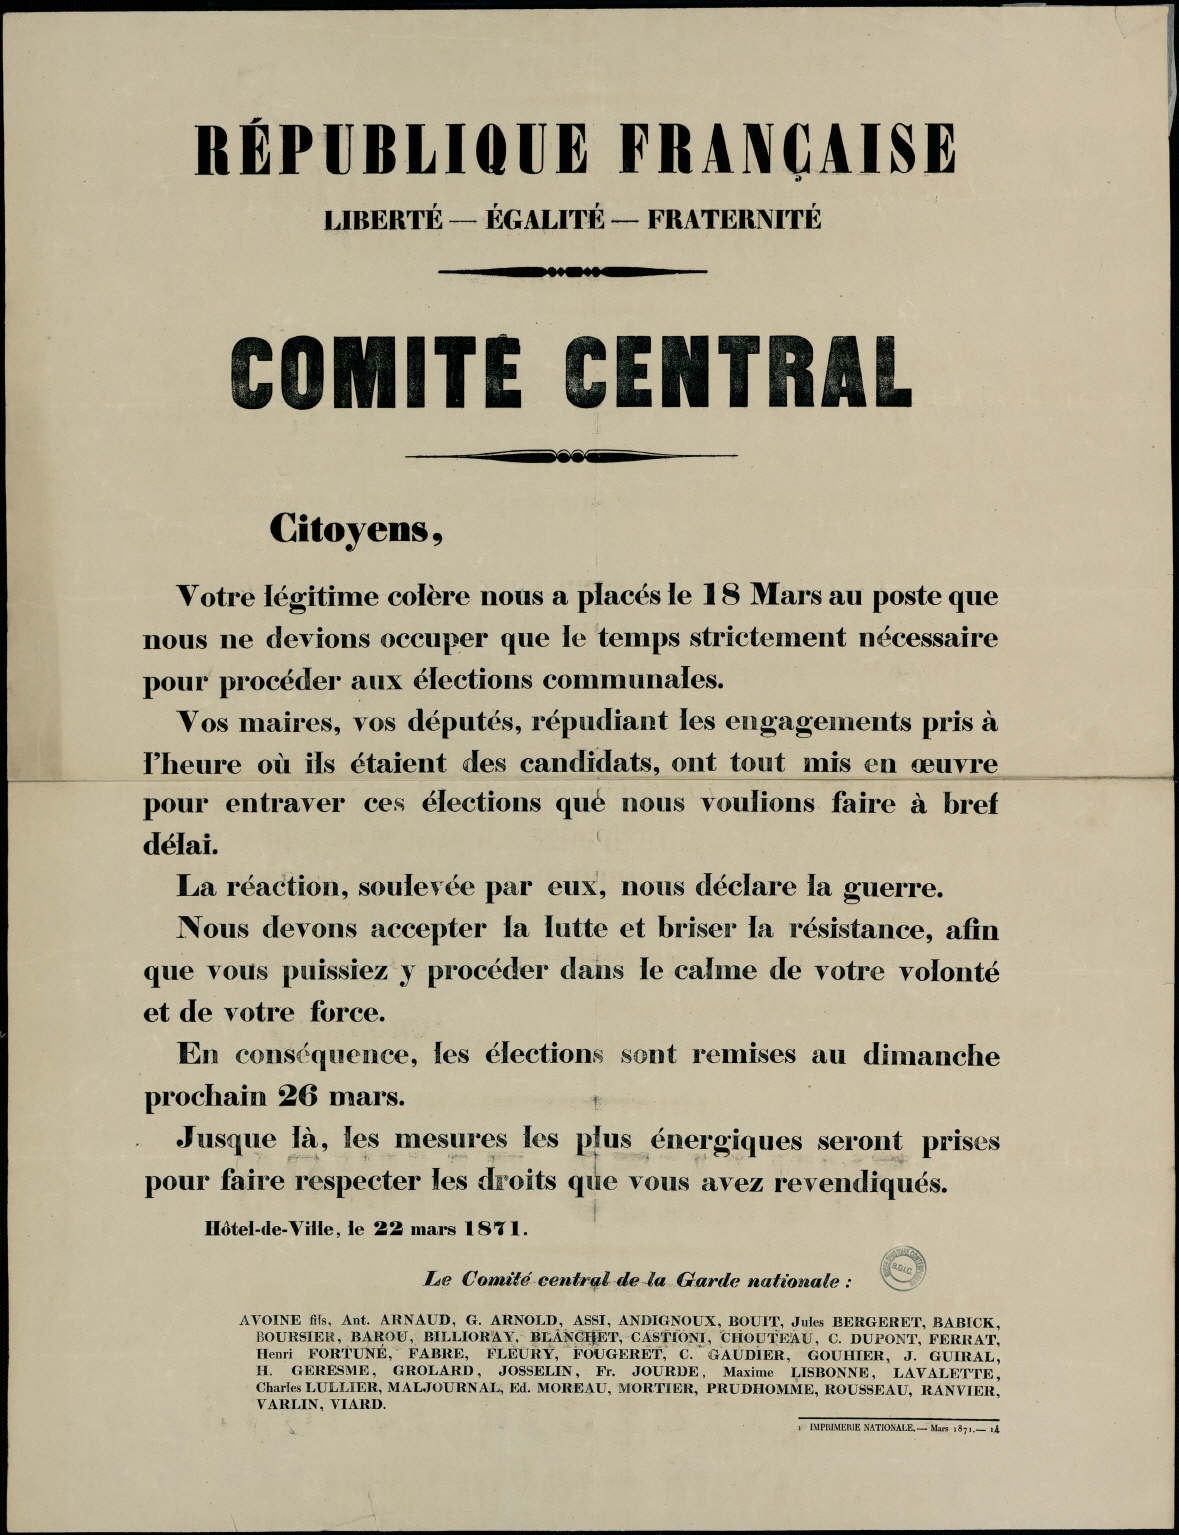 Affiche de la Commune du 22 mars 1871 – Le Comité central de la Garde nationale annonce « les élections sont remises au dimanche 26 mars »